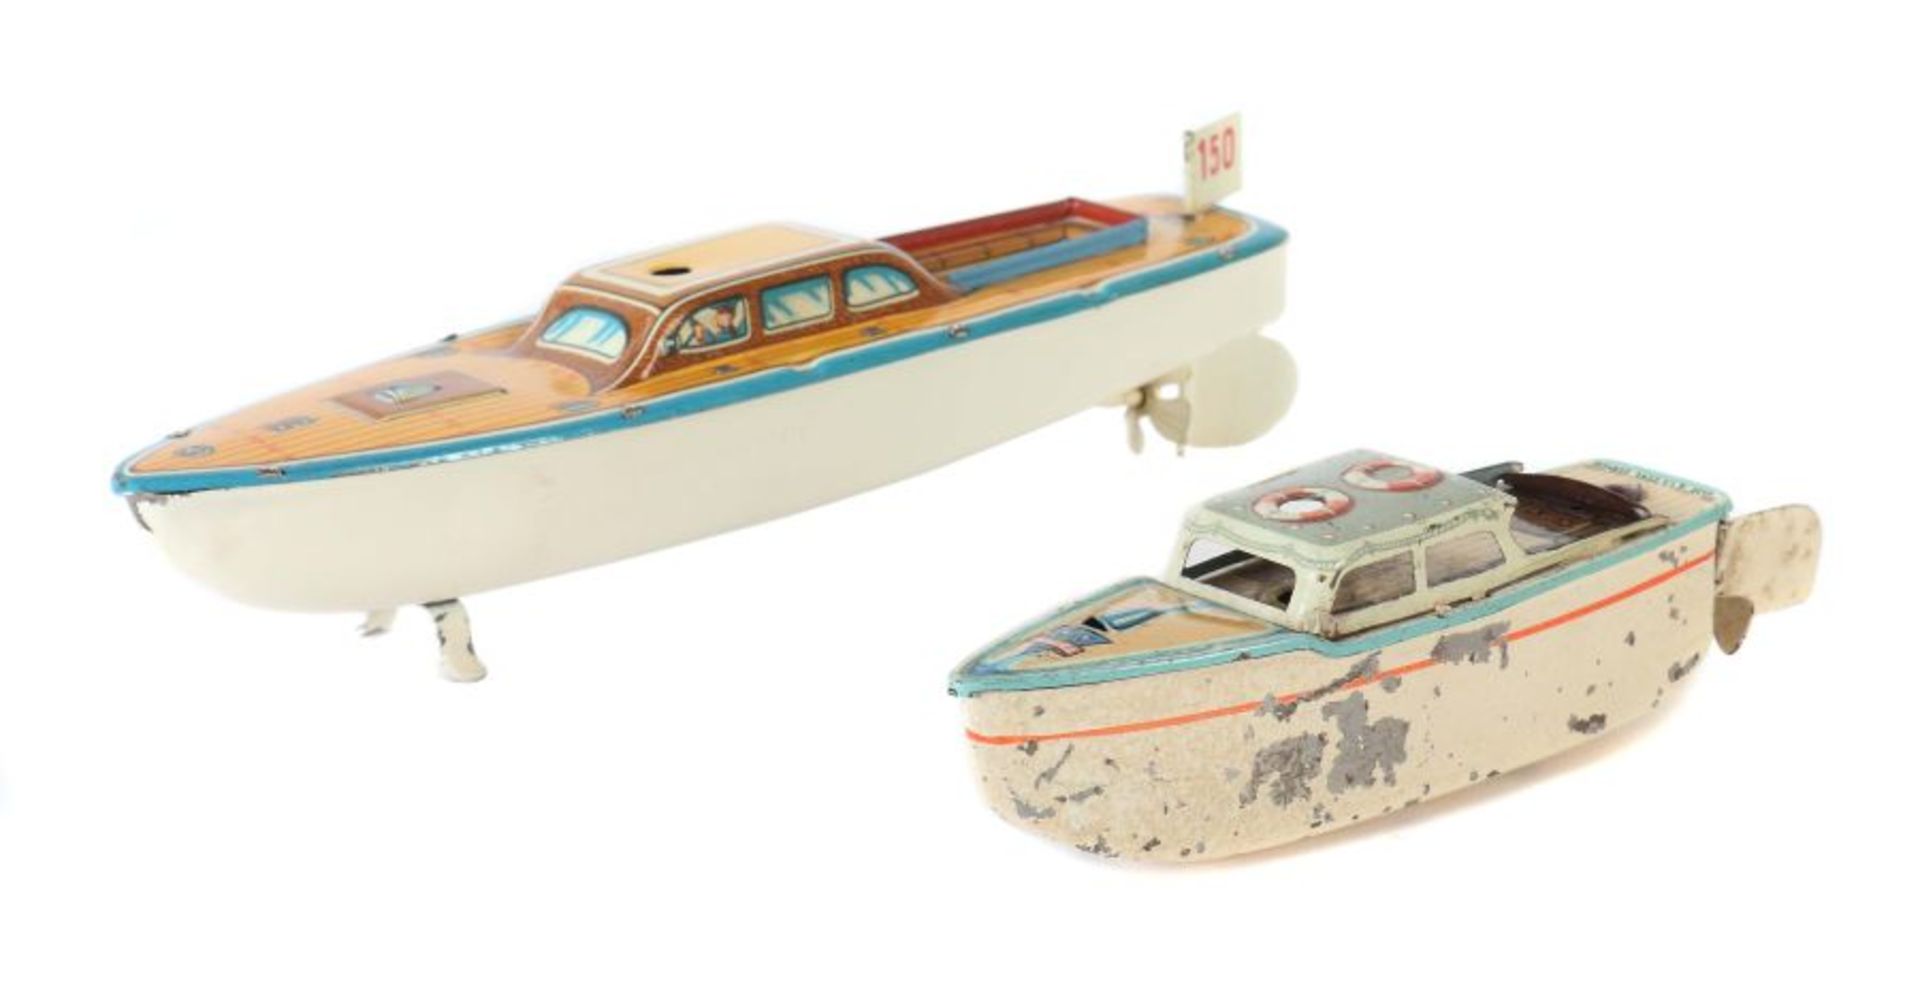 2 Weekender 1 x Arnold, Modell-Nr. 2035, ca. 1950er Jahre, Kabinenboot aus Blech, lithografiert,